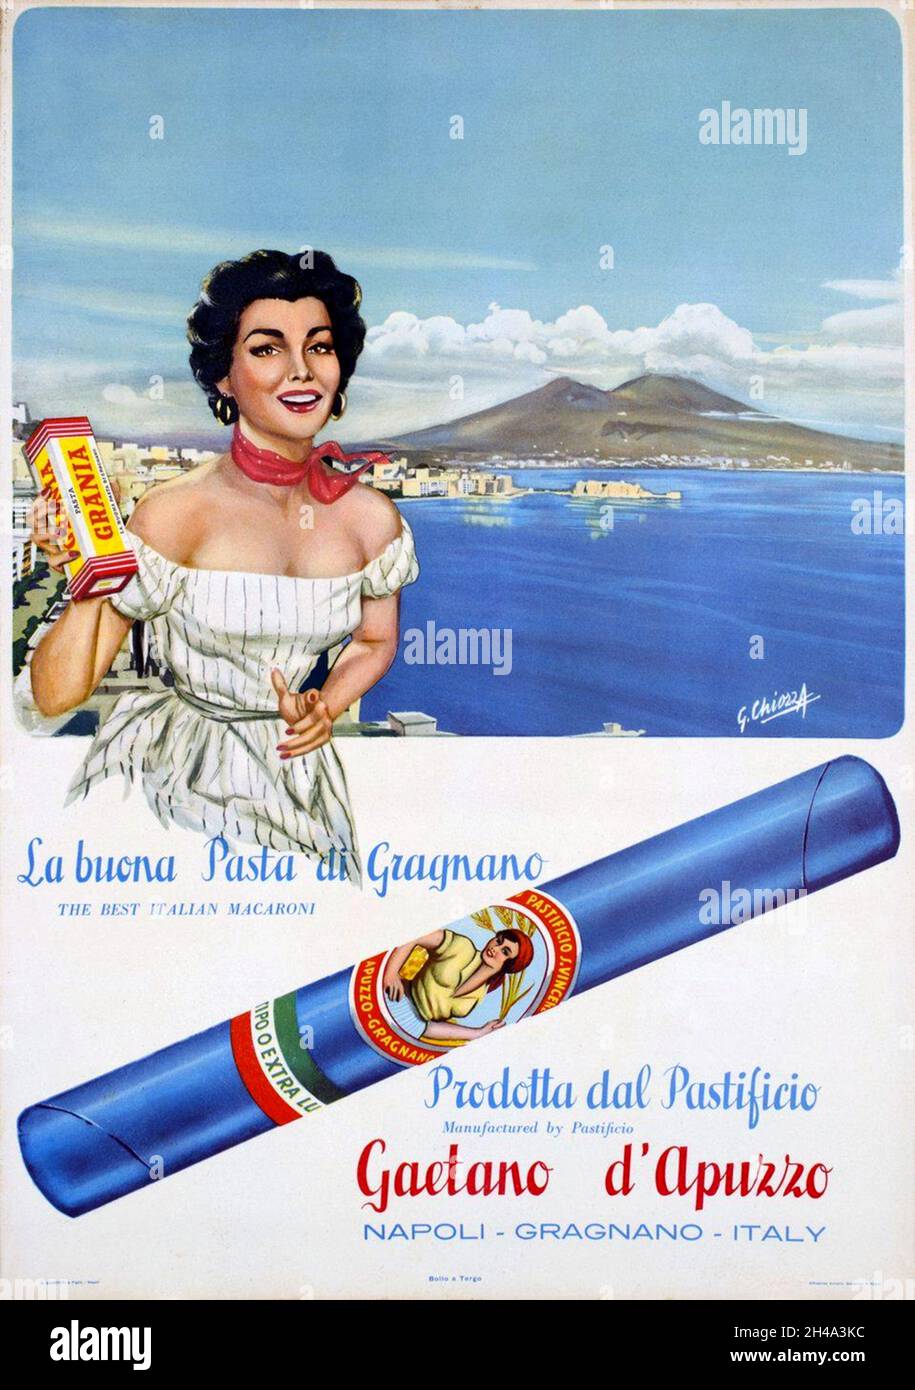 1955 ca , ITALIA : Poster pubblicitario Italiano per LA PASTA GAETANO D'APUZZO , di Gragnano ( Napoli ), Poster pubblicitario. Opera del pittore G. Chiozza . - Pubblicità - illustrazione - illustrazione - ANNI CINQUANTA - anni '50 - '50 - Pubblicità - annuncio pubblico - reclame - advertise - poster - industria - industria alimentare - ALIMENTO - ALIMENTI - ITALIA - INDUSTRIA - FABBRICA - cibo - alimentari ----- Archivio GBB Foto Stock